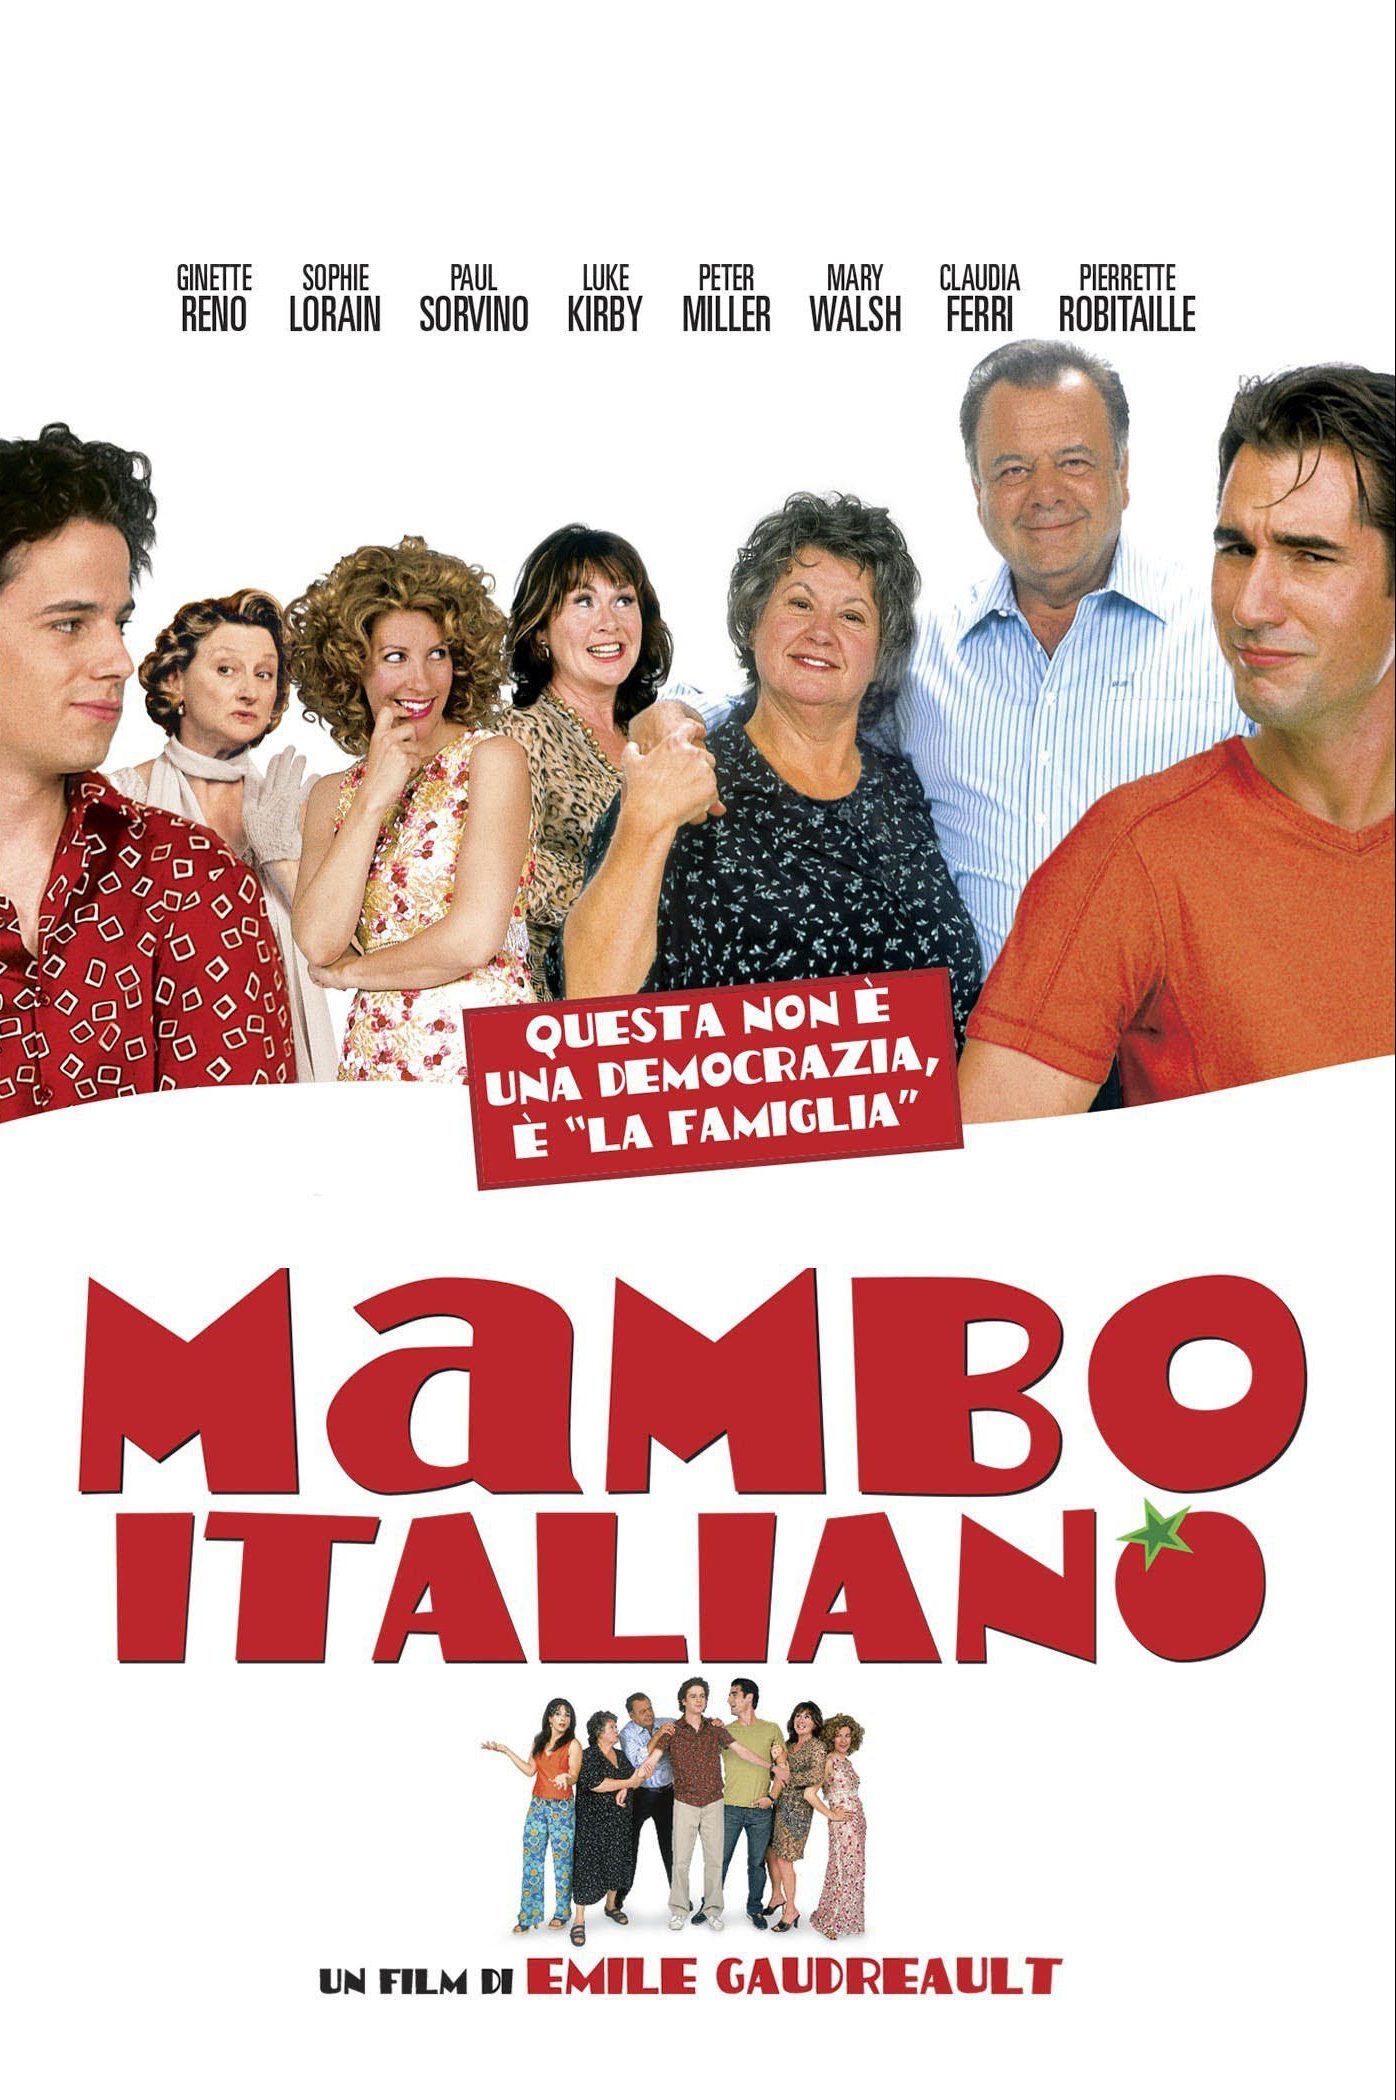 Mambo italiano [HD] (2003)